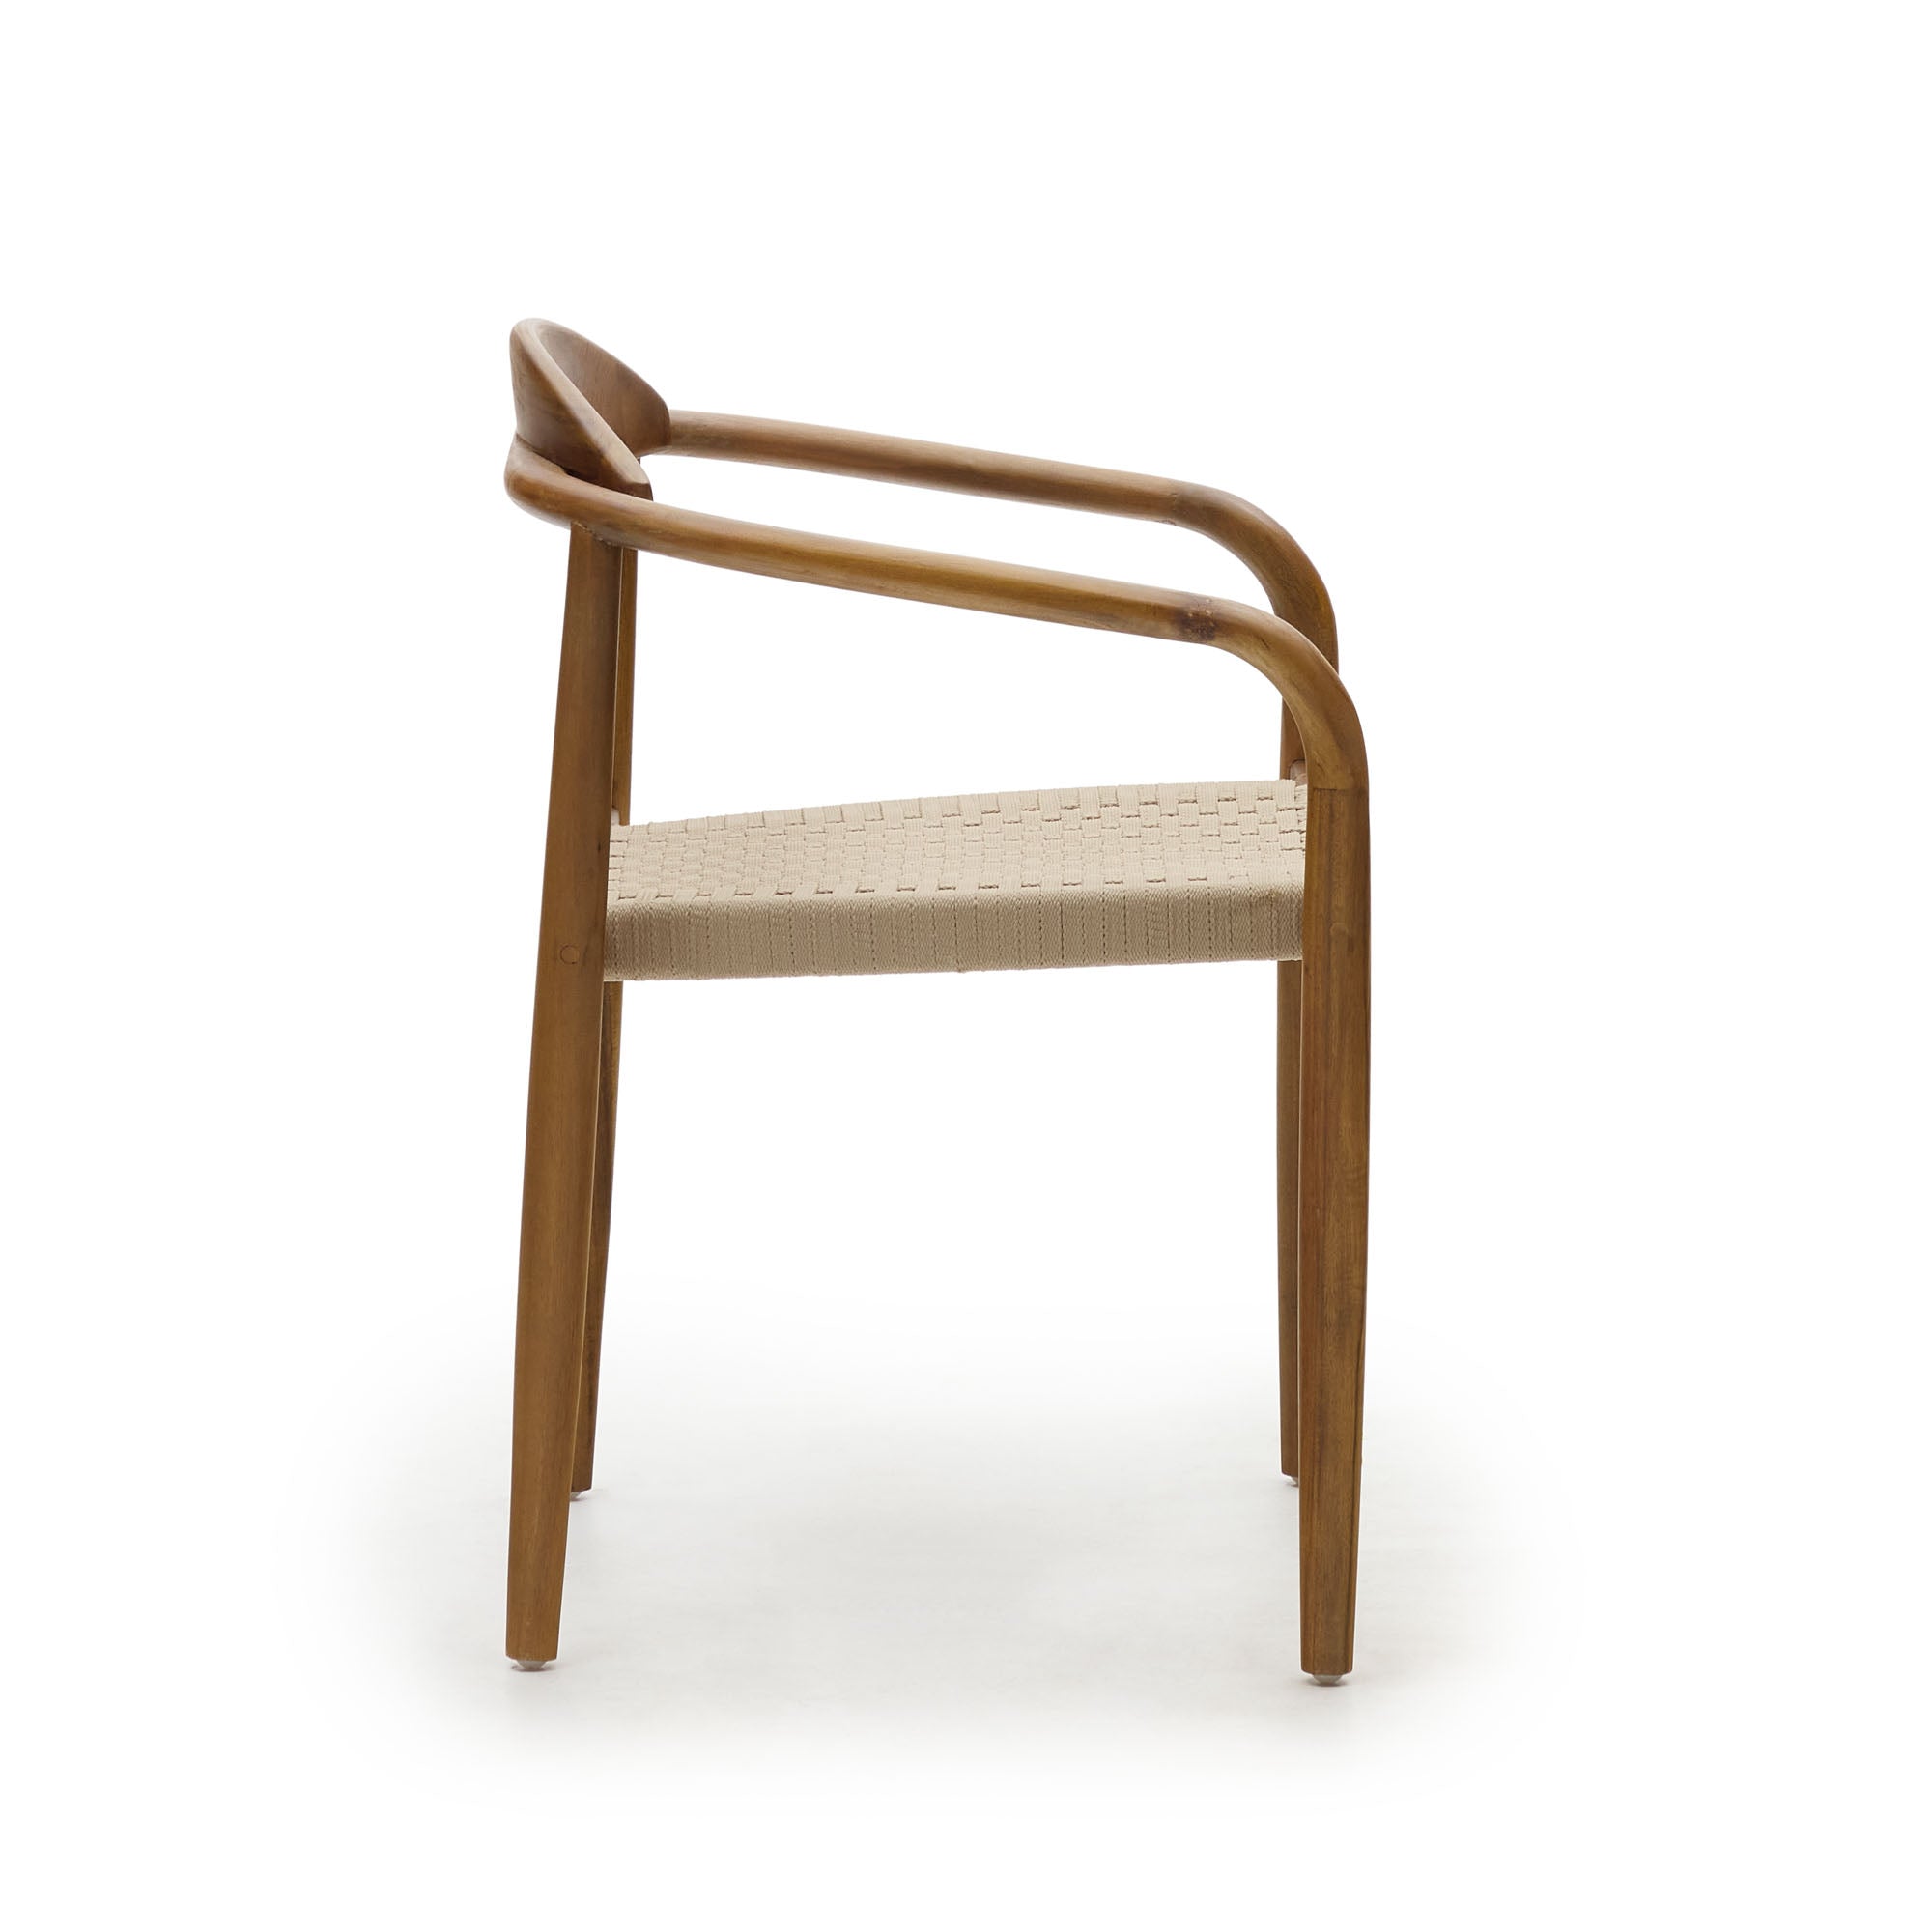 Nina egymásba rakható szék tömör akácfából, diófa kivitelben, bézs színű kötéllel az ülőlapon